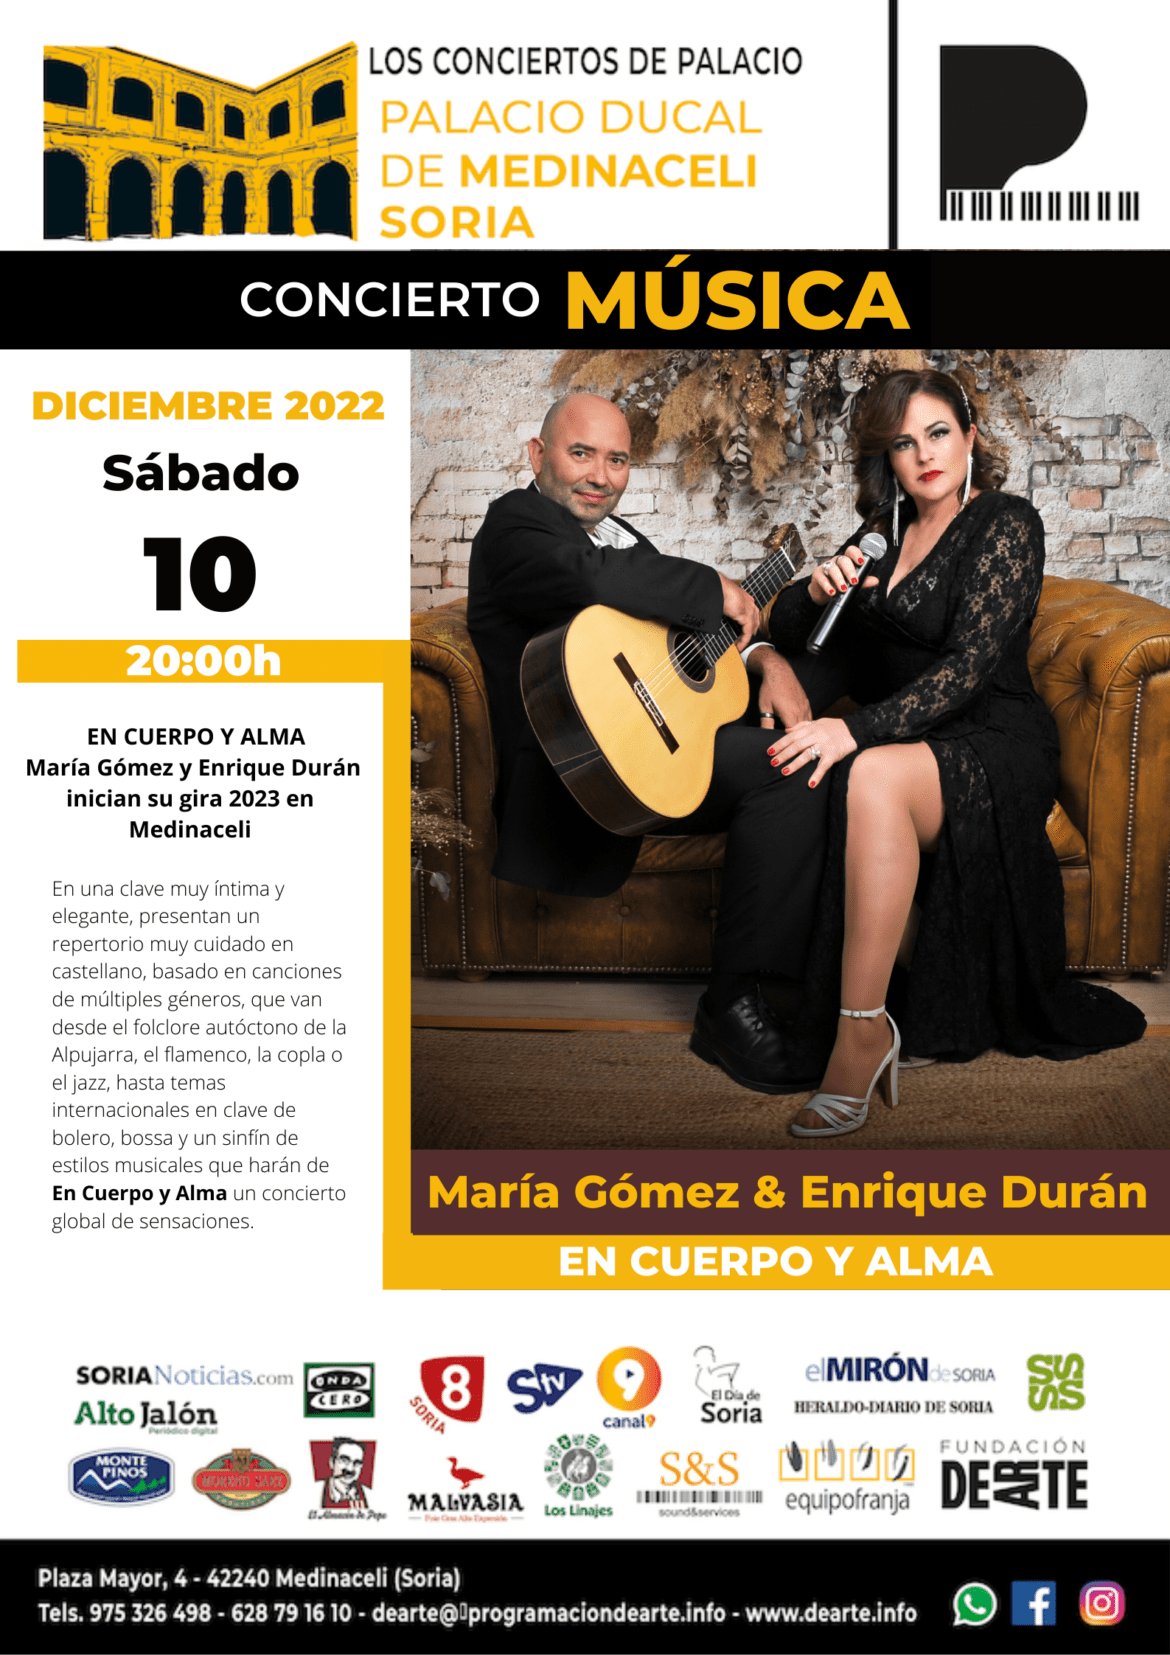 Concierto de Música María Gómez & Enrique Durán